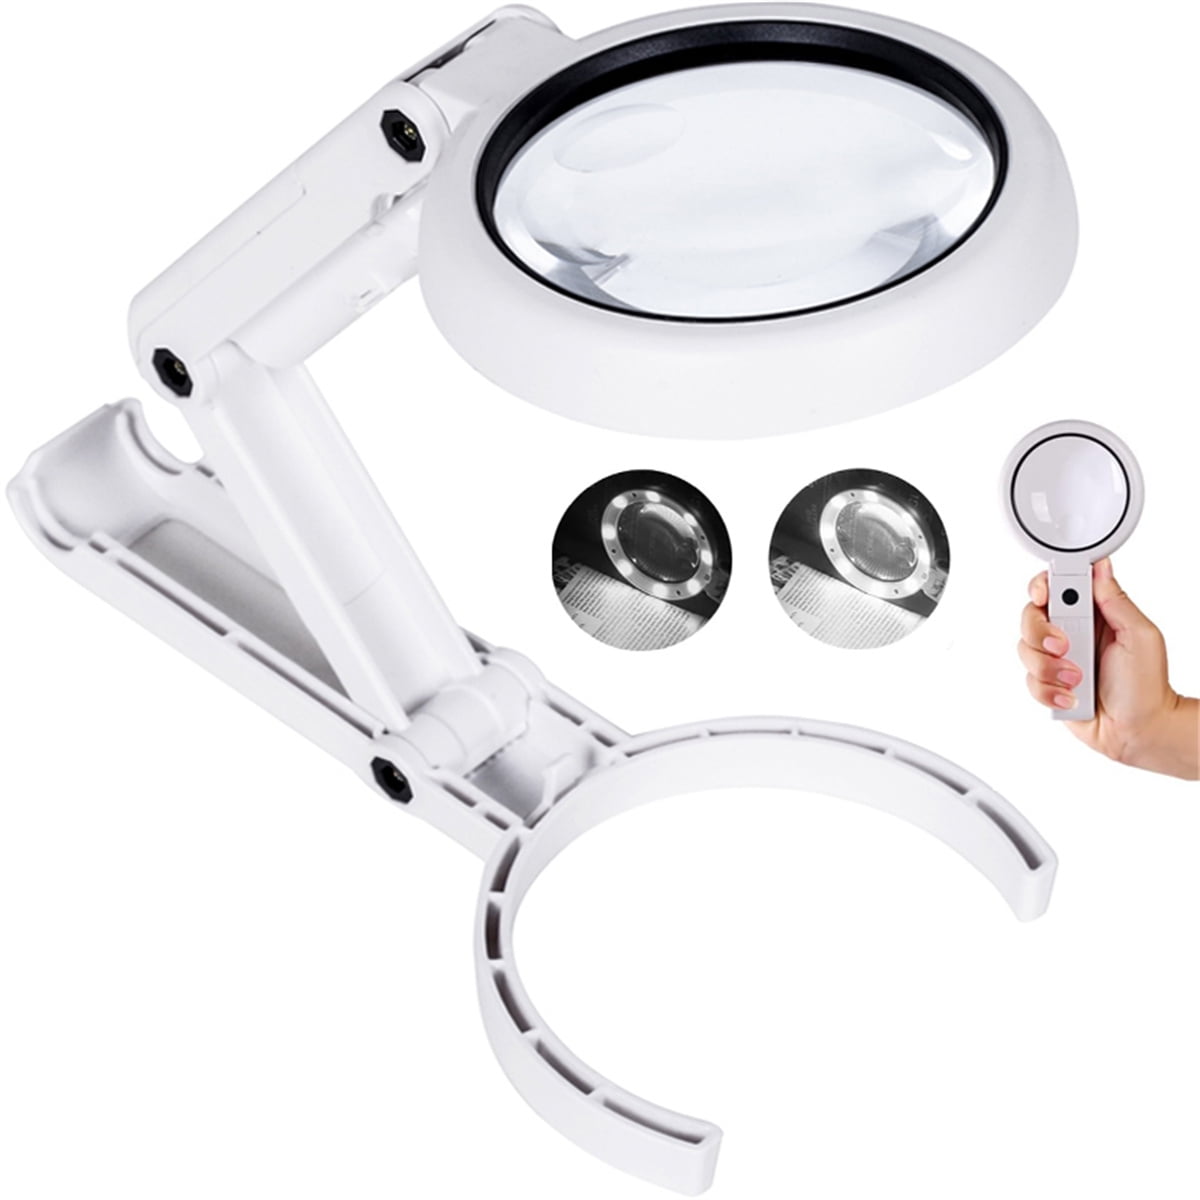 Visor Magnifier With LED Light, Hobby Lobby